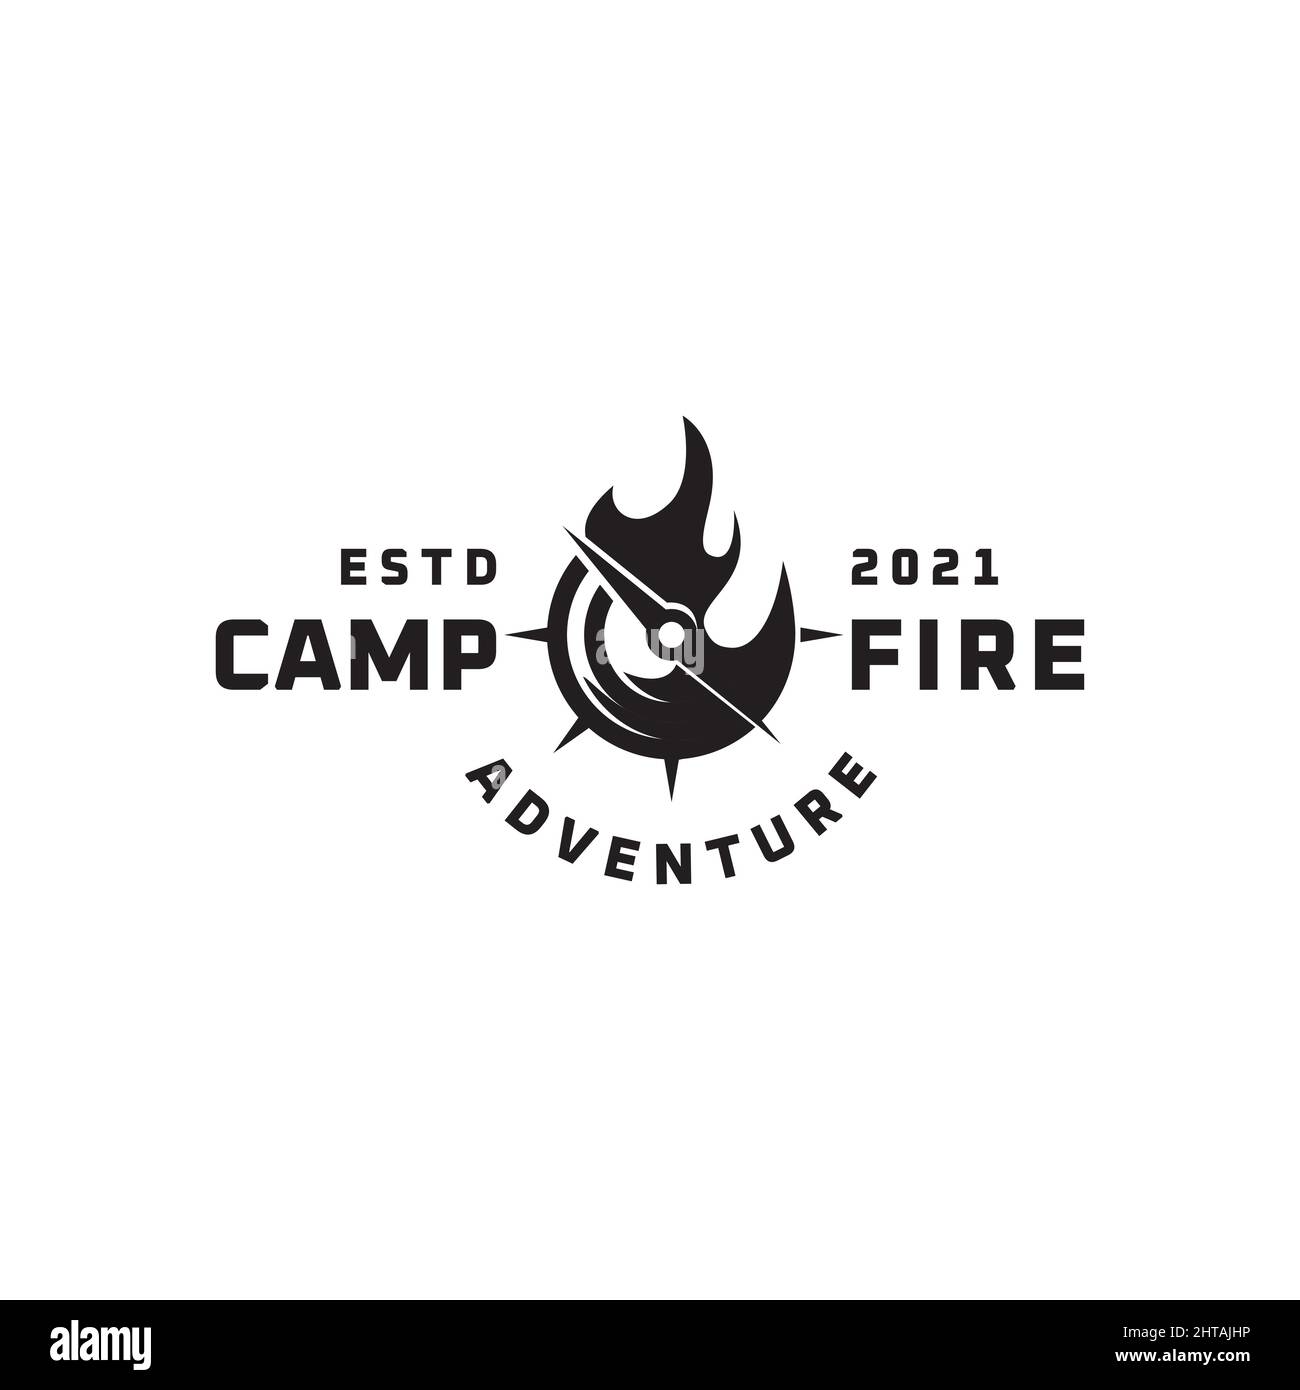 Camp fire logo design inspiration vector template Stock Vector